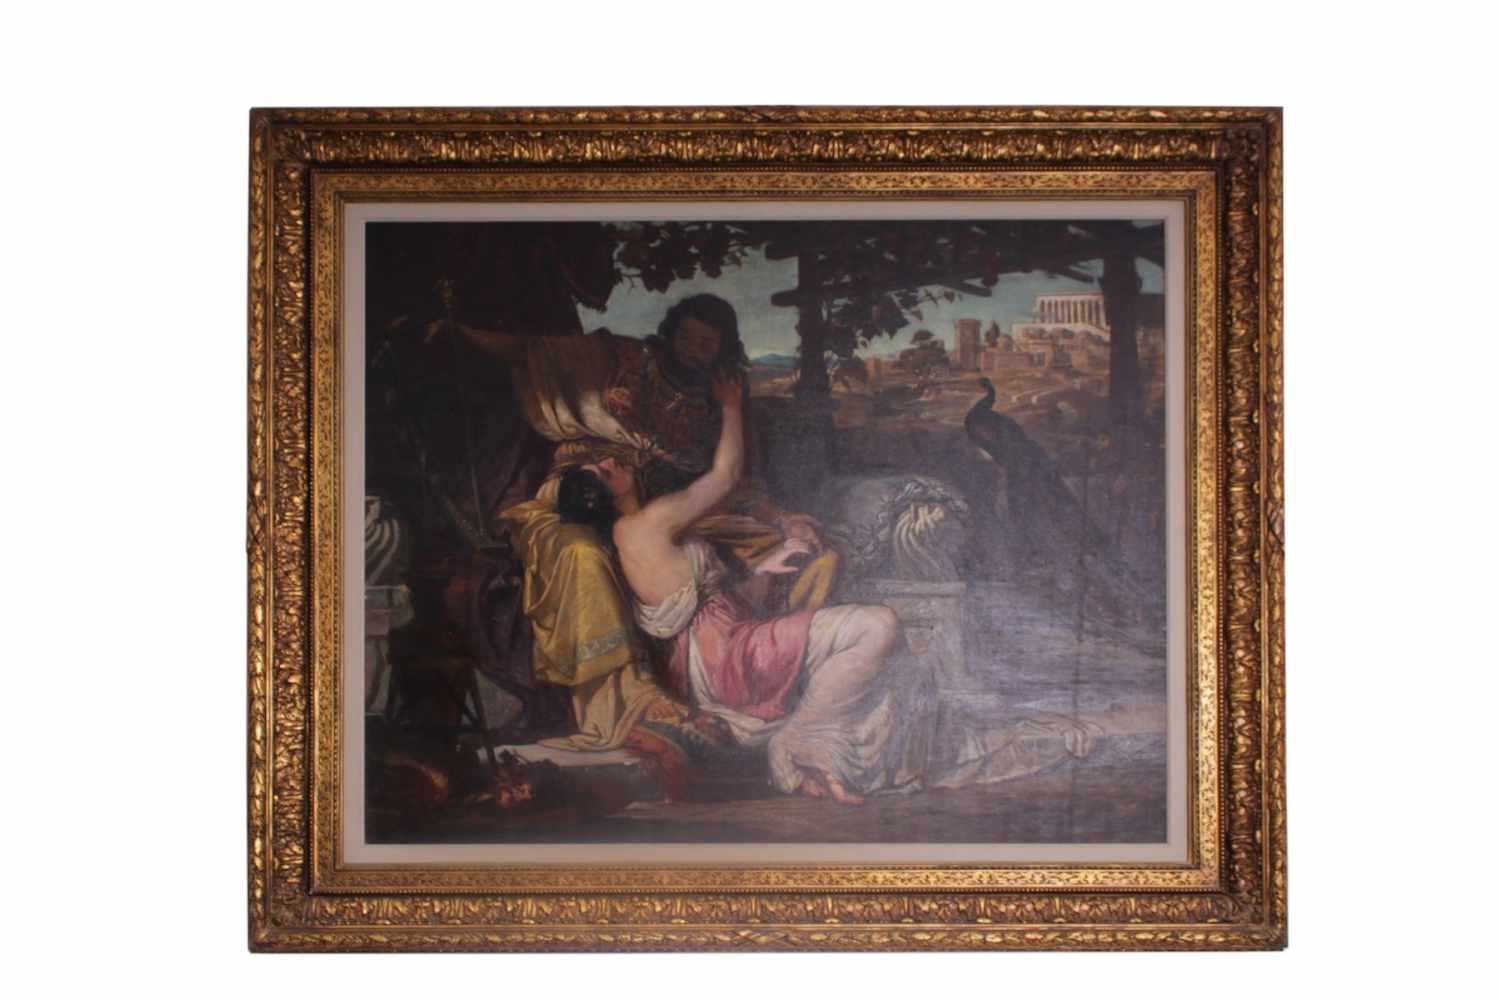 SAMSON ET DALILA Prächtiges Ölbild, auf Leinwand, um 1870, überaus beeindruckender